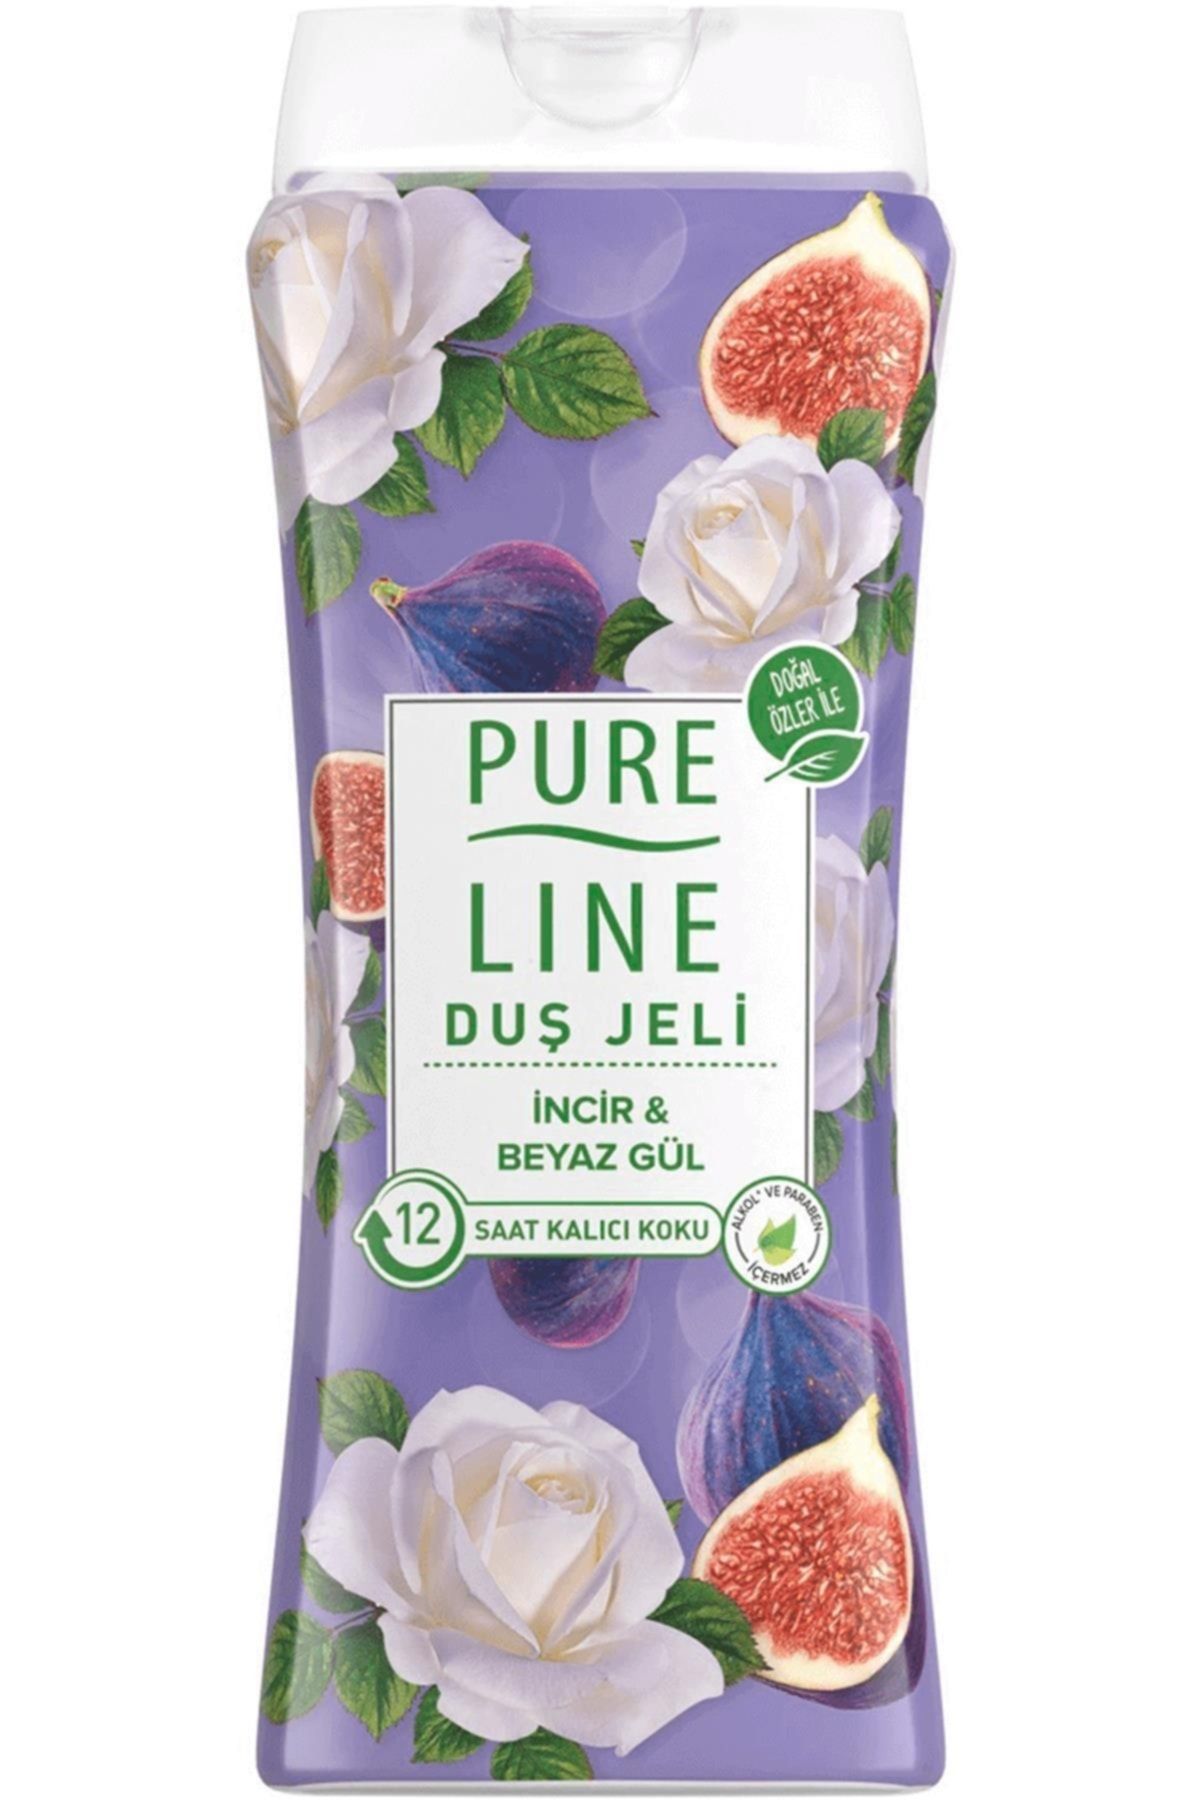 Pure Line : Incir Ve Beyaz Gül Duş Jeli 400 ml: Duş Jeli